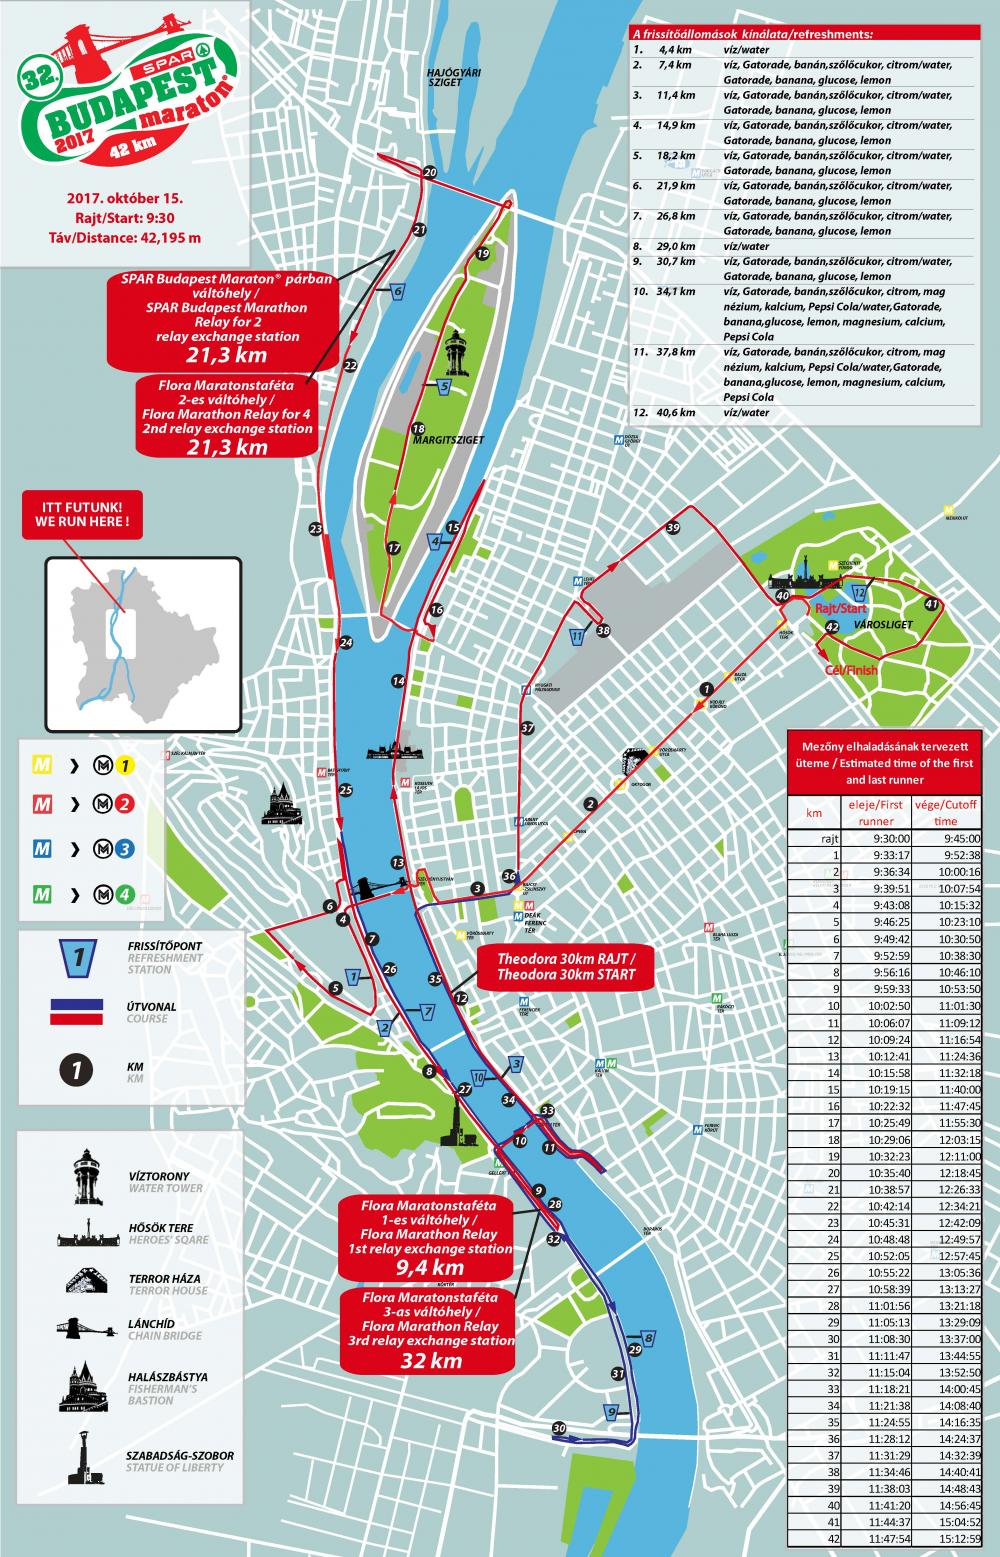 bp térkép útvonal 32. SPAR Budapest Maraton térkép   Futanet.hu bp térkép útvonal